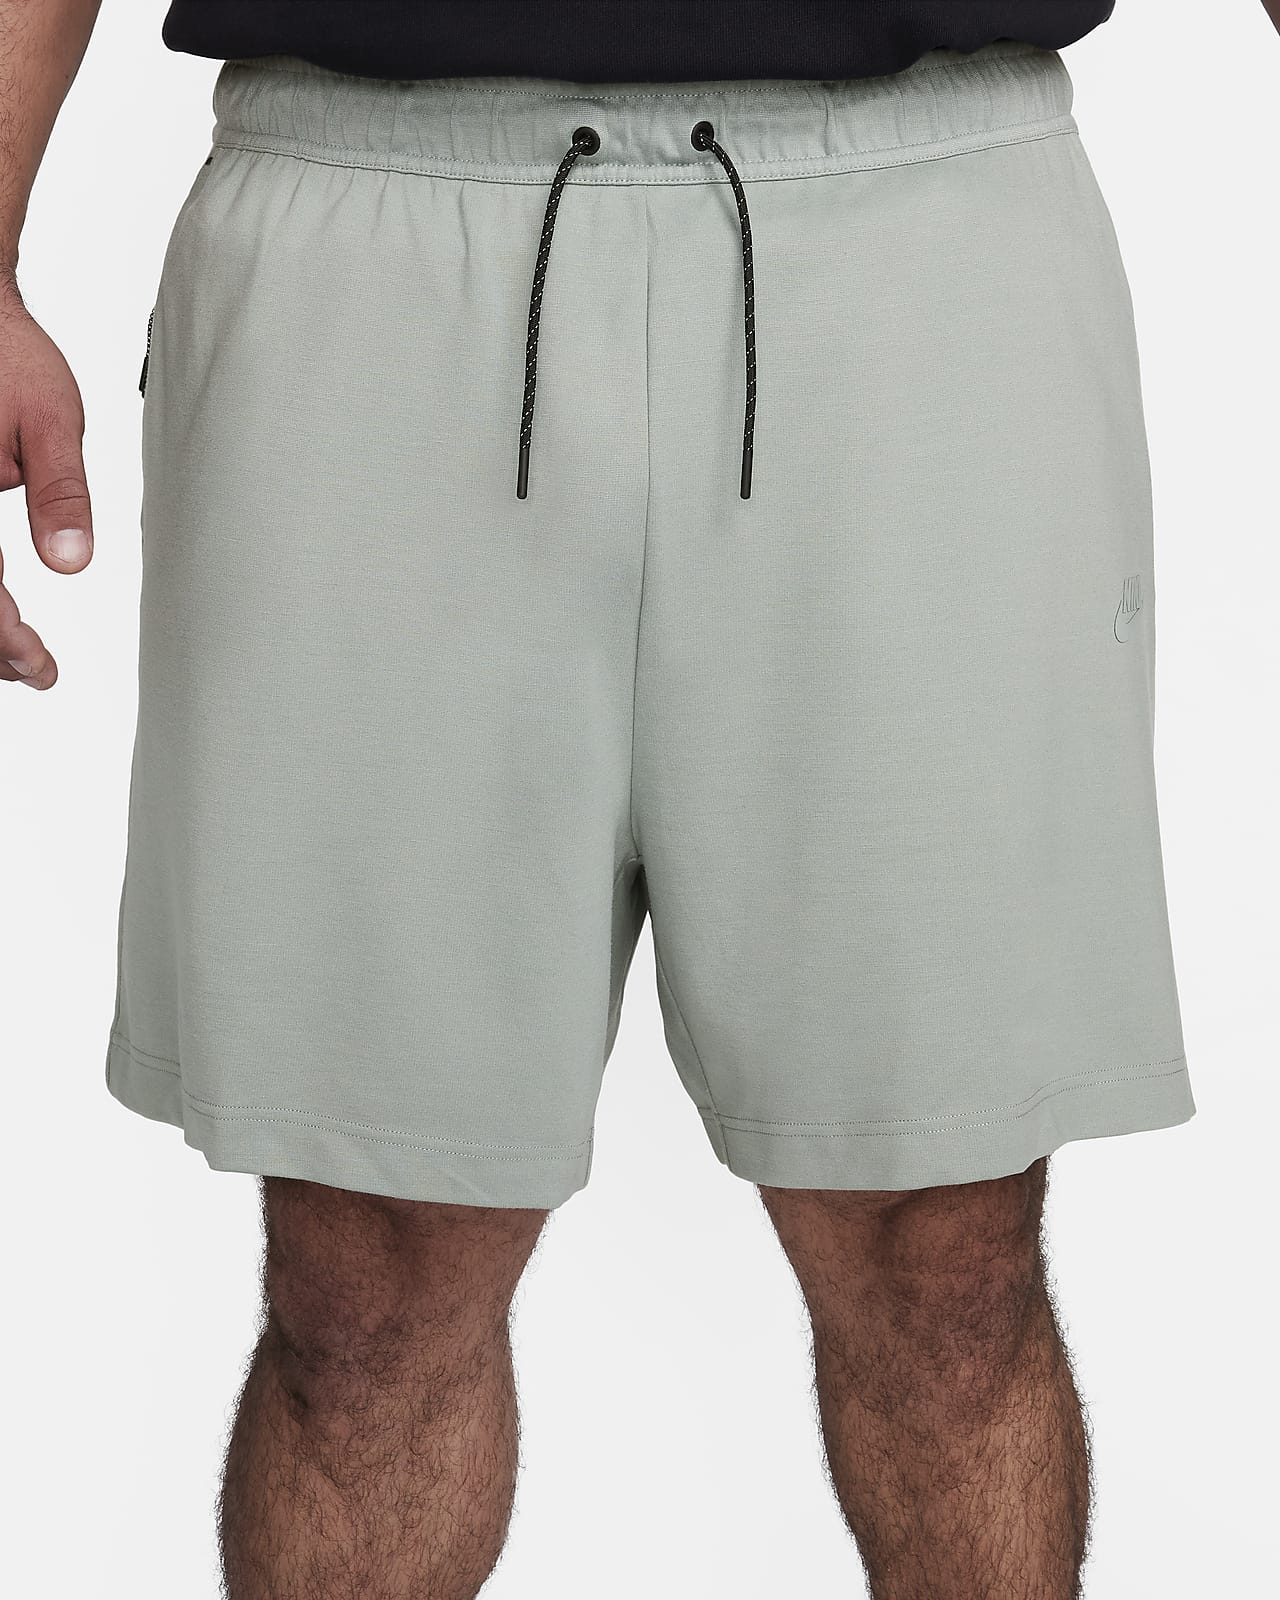 Nike Sportswear Tech Fleece Lightweight Men's Shorts